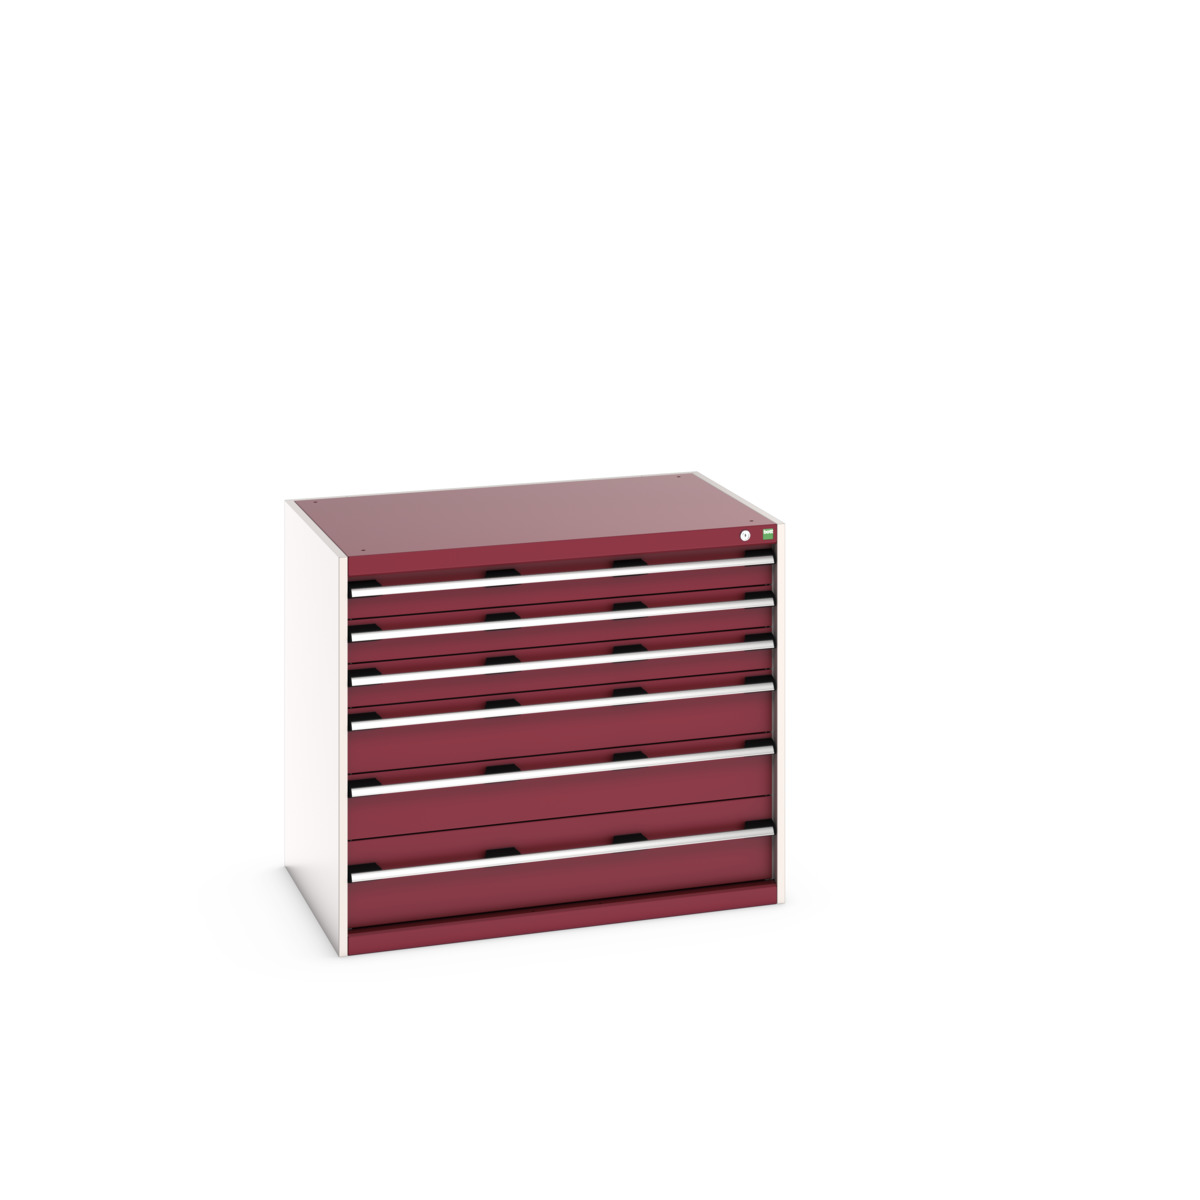 40029104.24V - cubio drawer cabinet